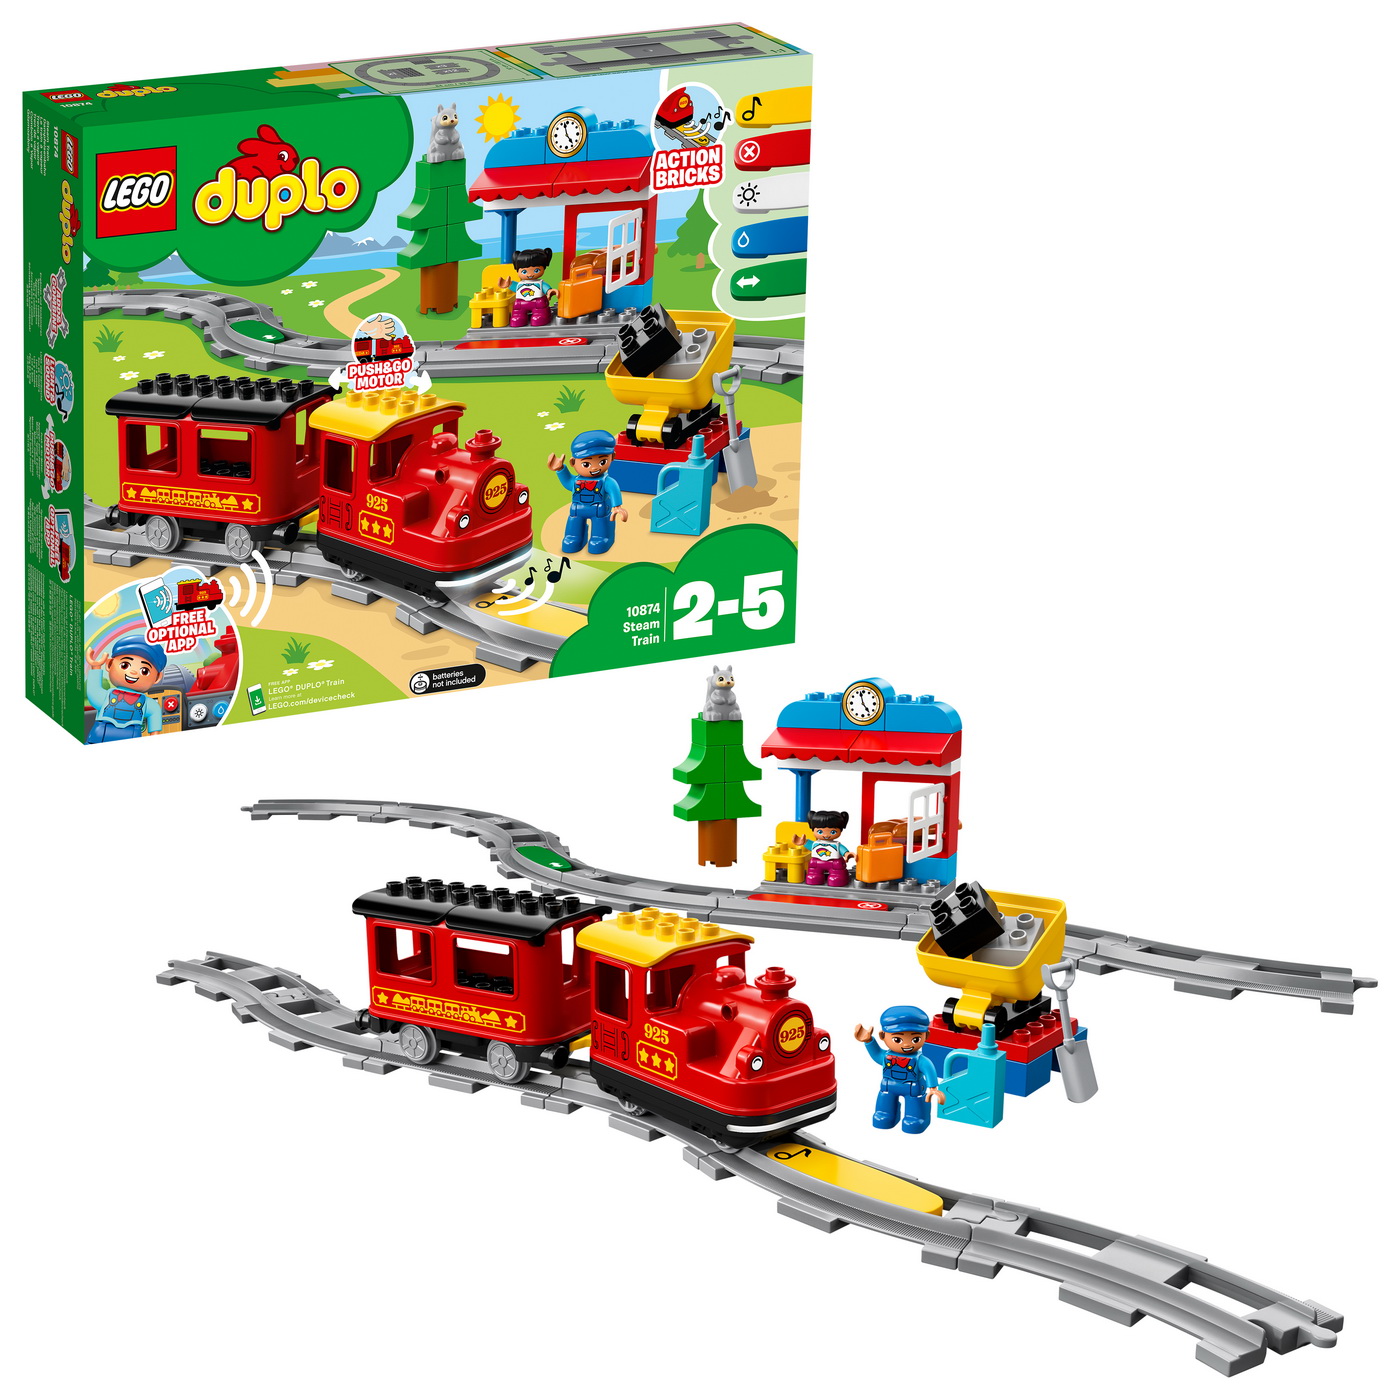 Tren cu aburi (10874) | LEGO - 2